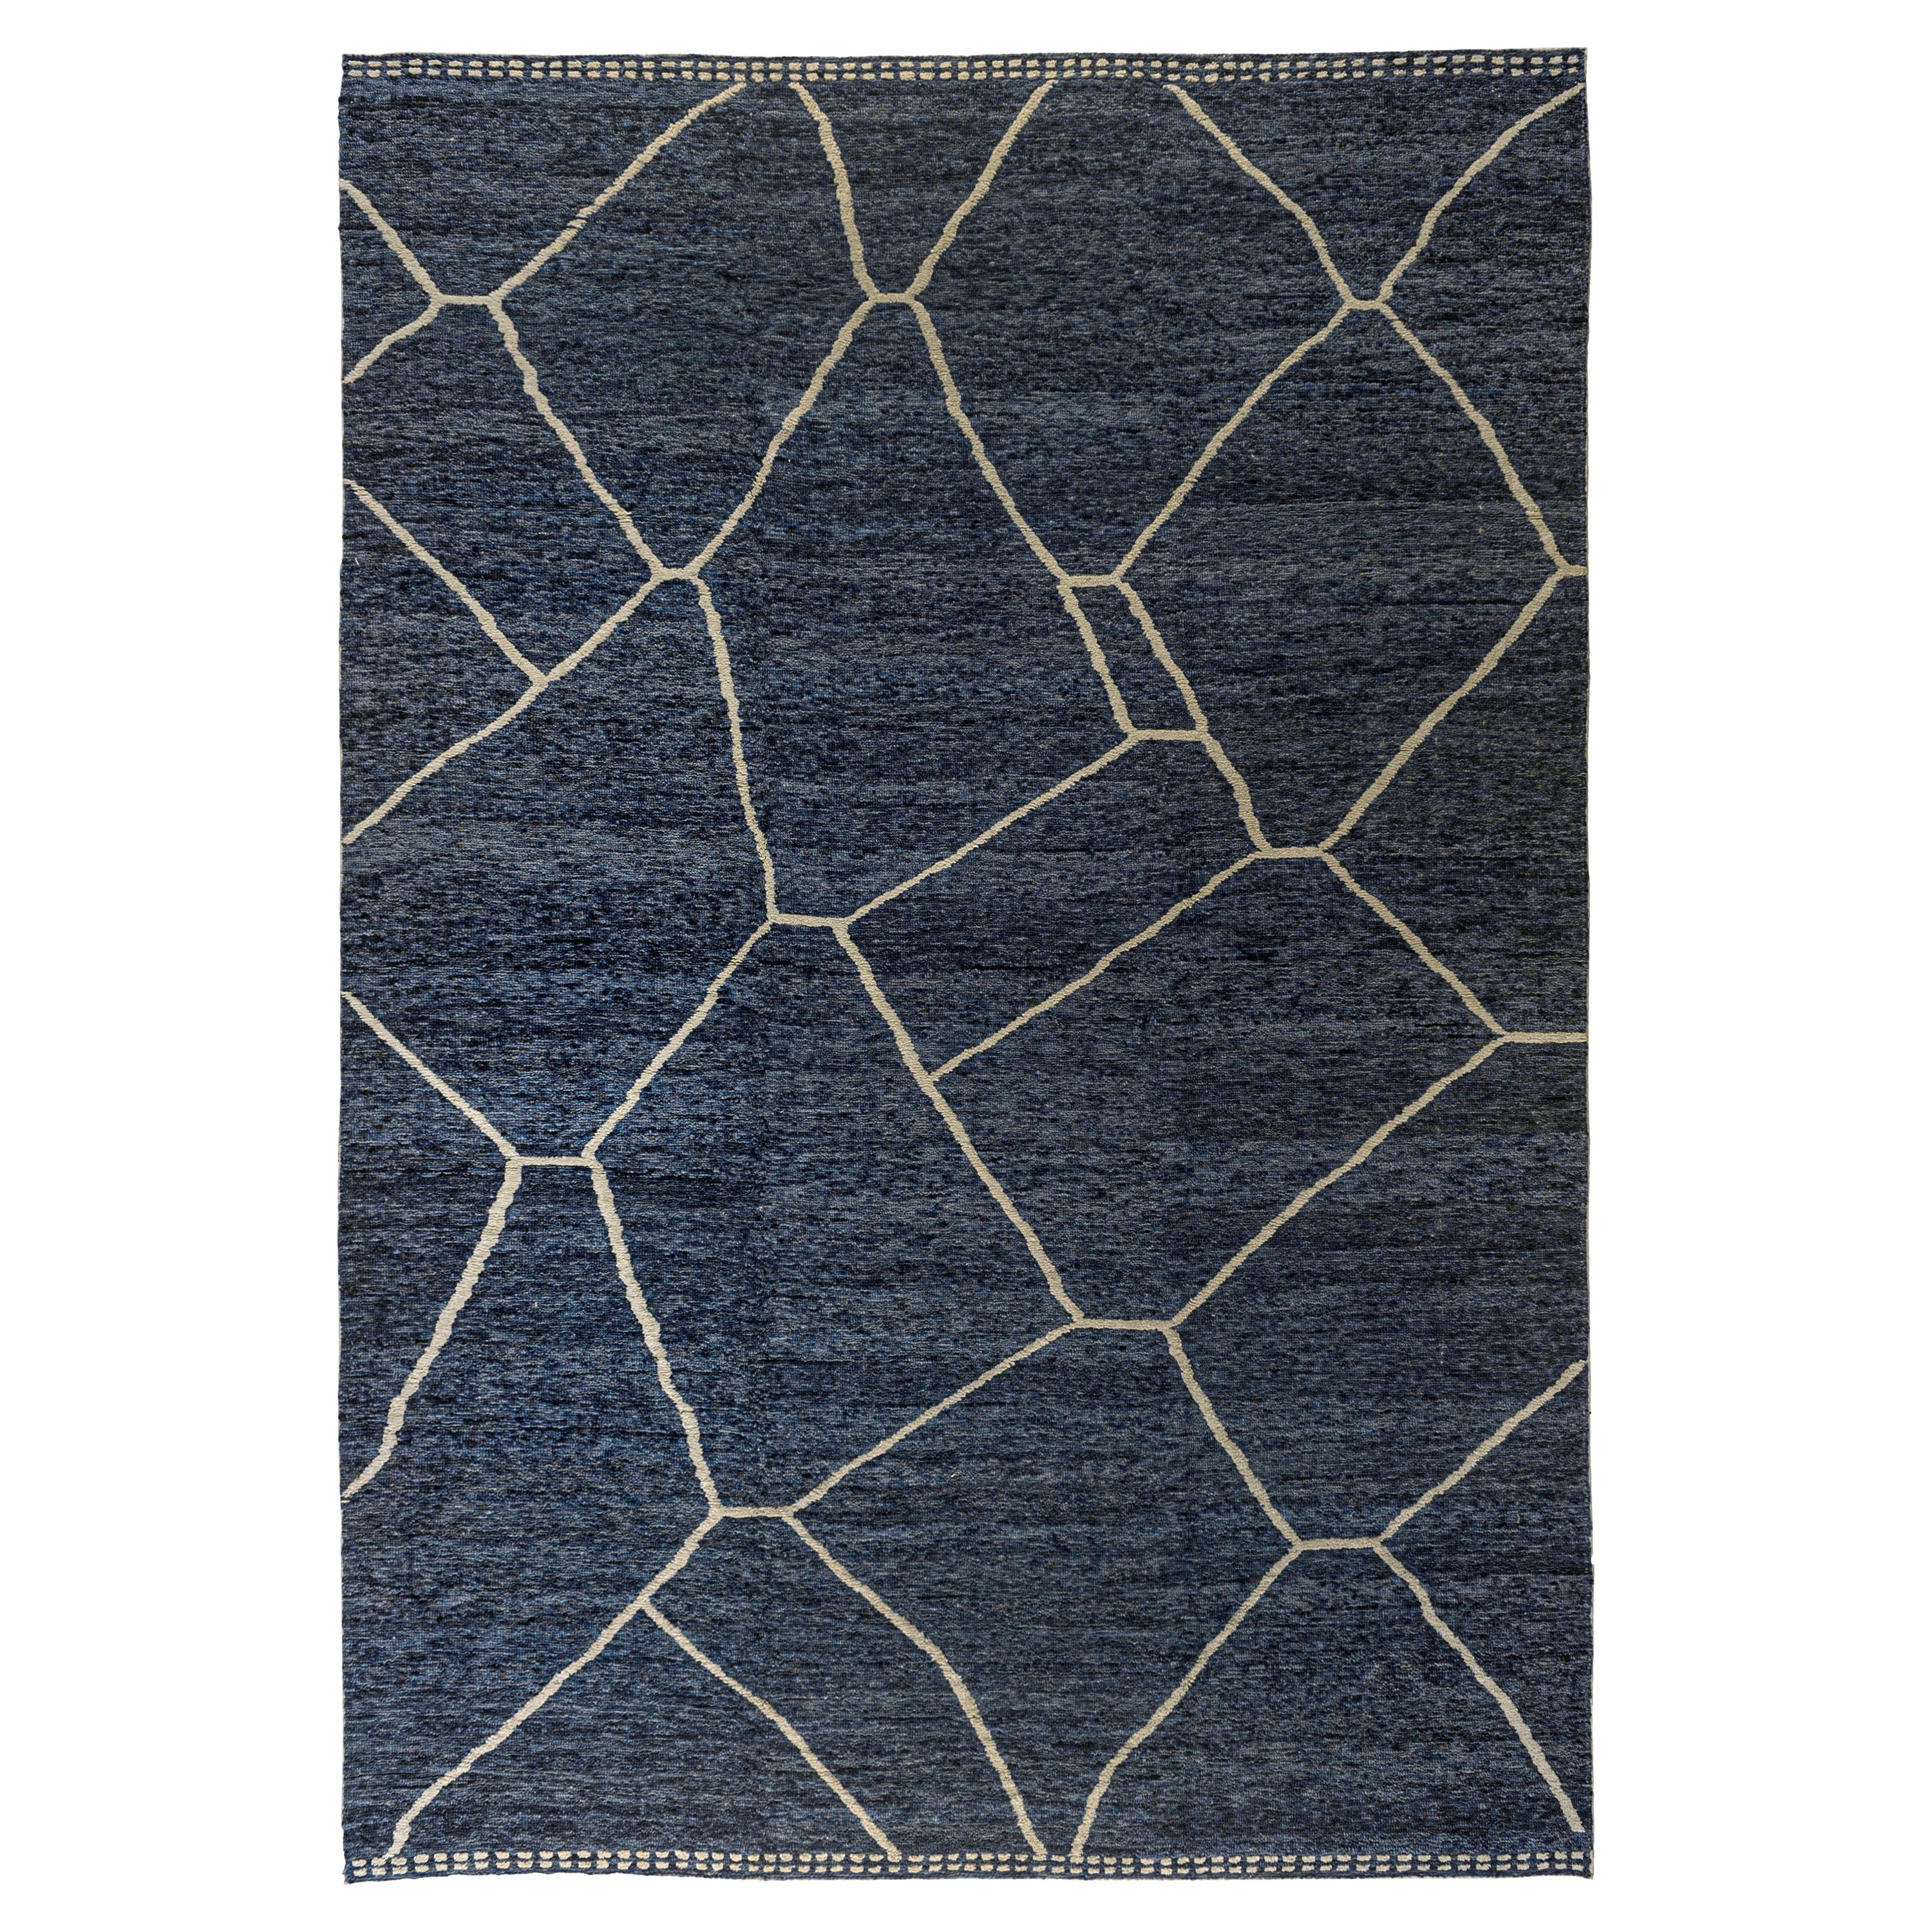 Blauer blauer marokkanisch inspirierter Teppich